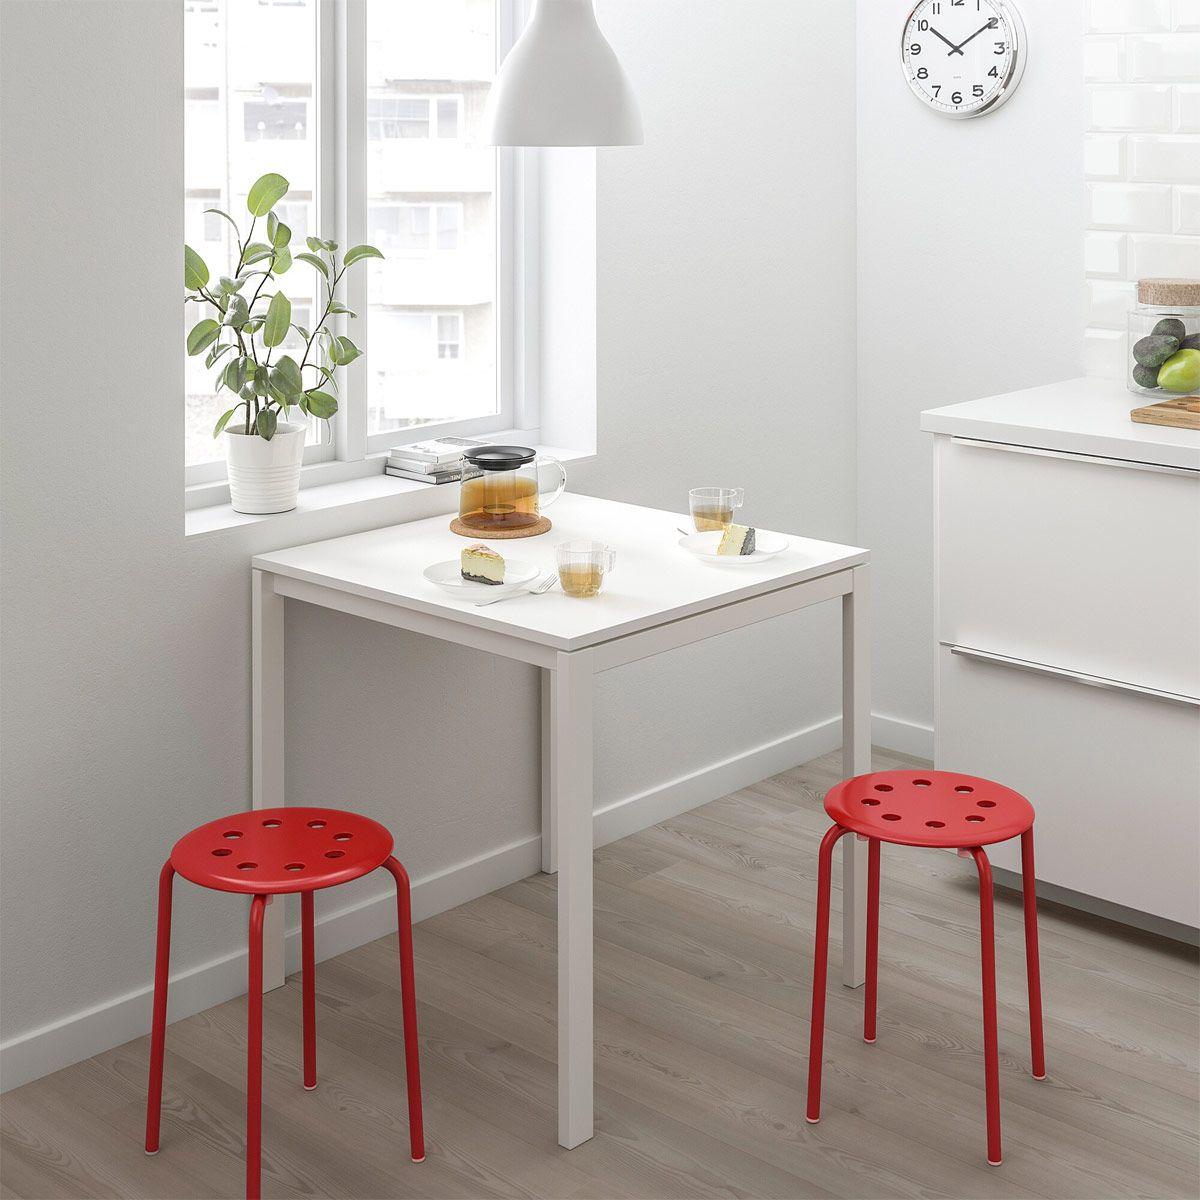 Mesa pequeña y taburetes apilable, de Ikea